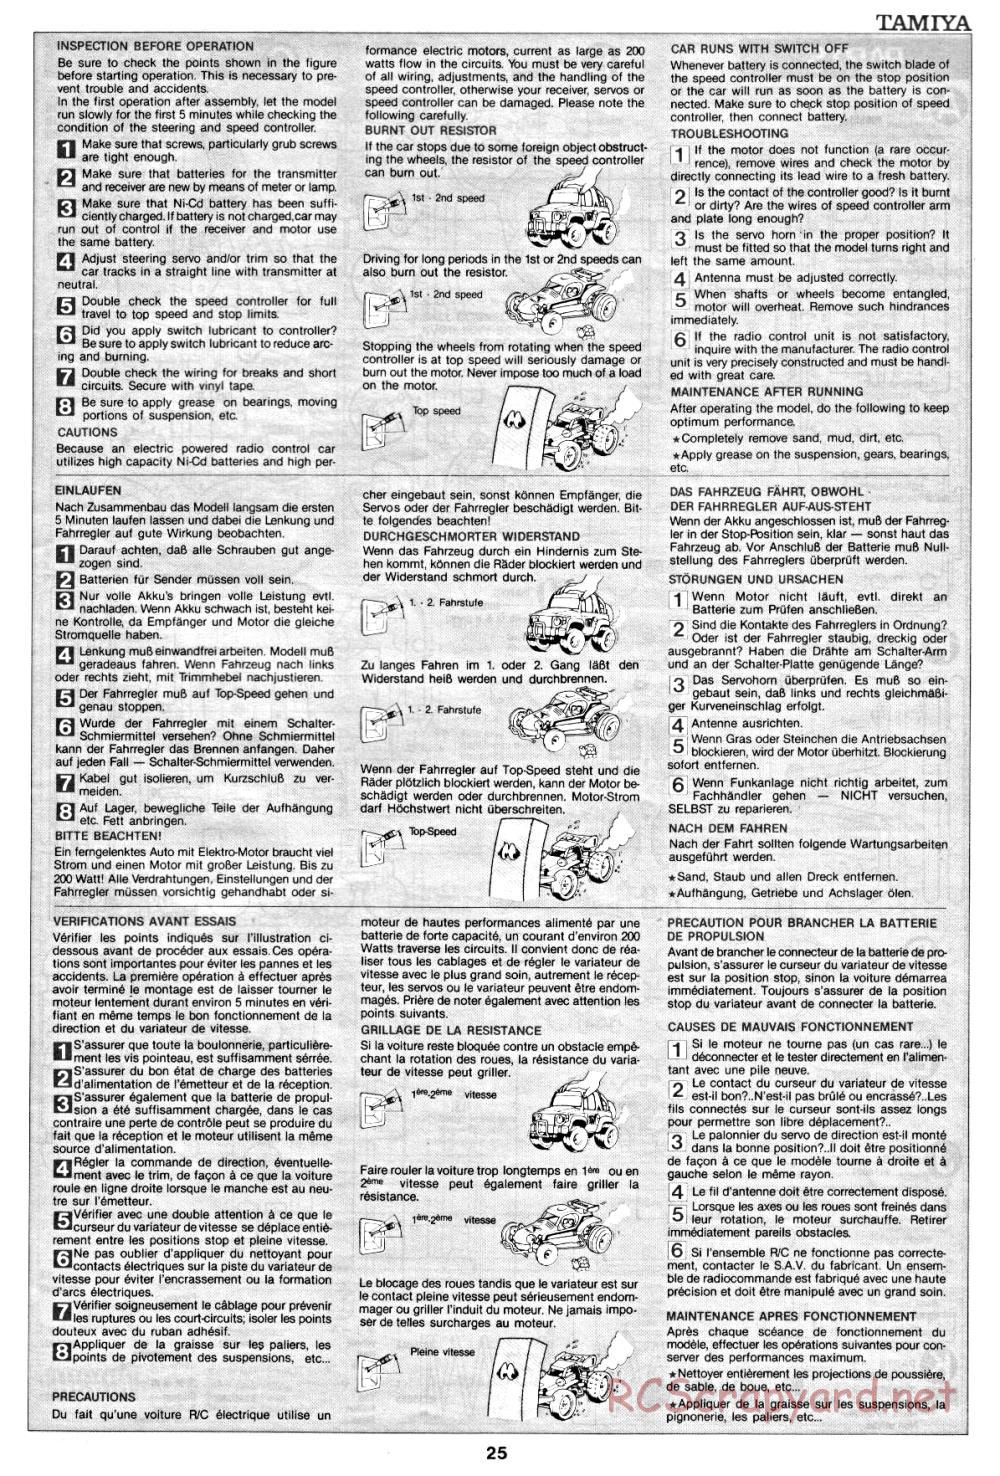 Tamiya - Clod Buster - 58065 - Manual - Page 25